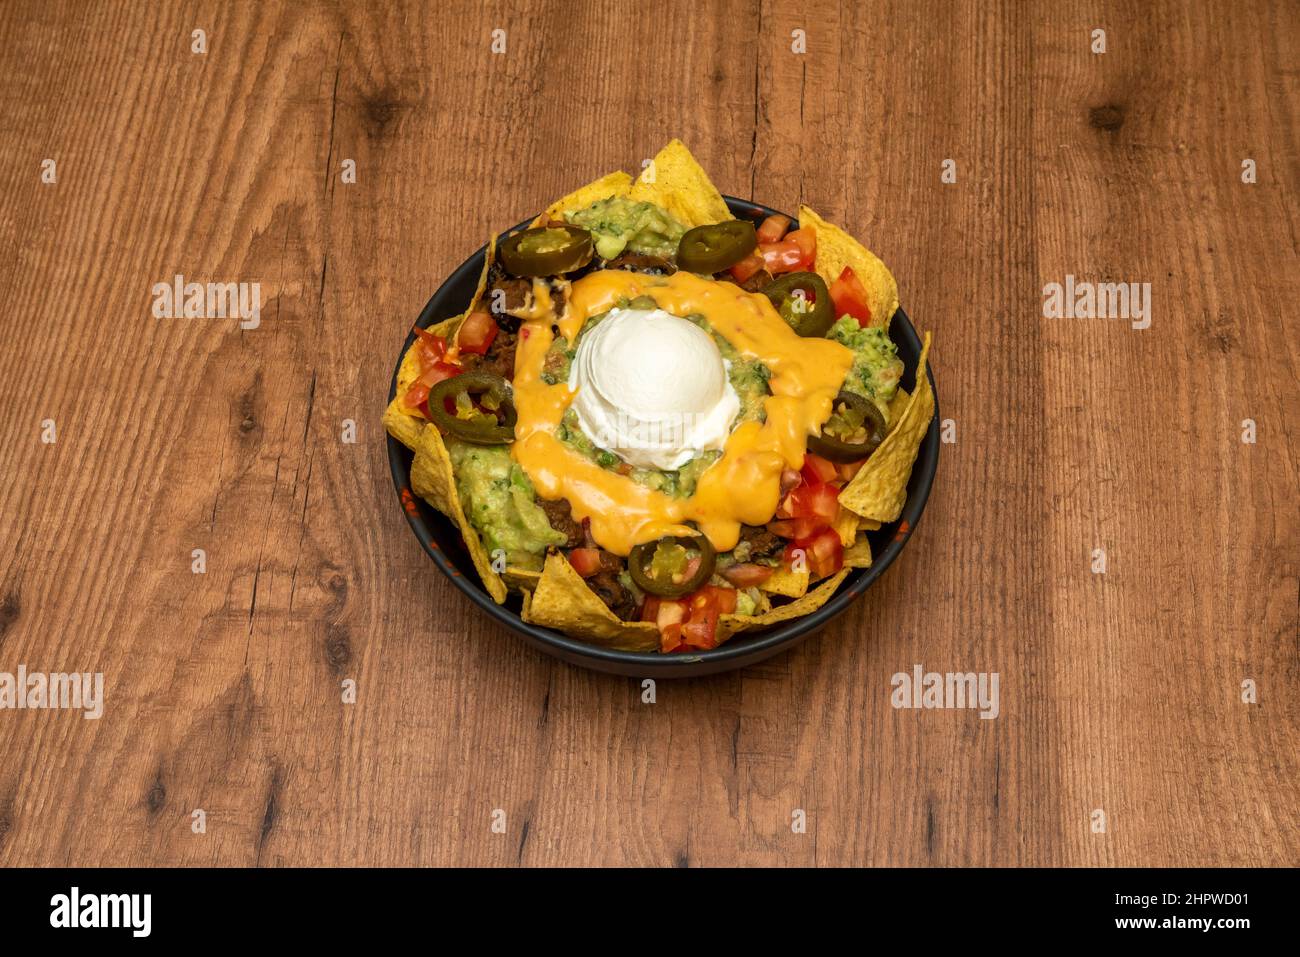 Les nachos au guacamole et au fromage sont un plat facile à préparer, avec lequel vous pouvez offrir à vos invités une option de repas rapide et très savoureux. Banque D'Images